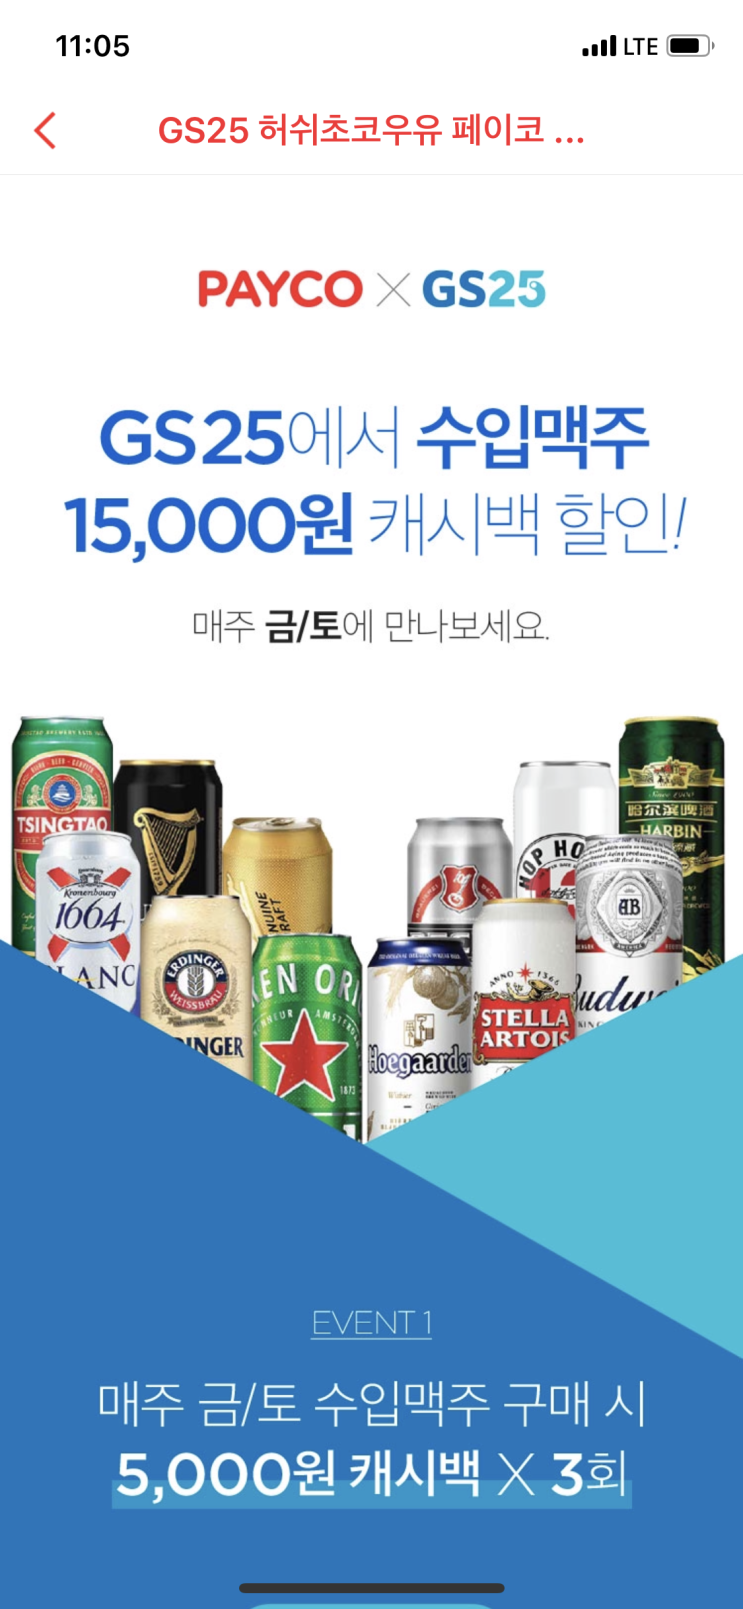 GS25 금요일, 토요일 수입맥주 할인 정보 공유...(feat. 페이코)